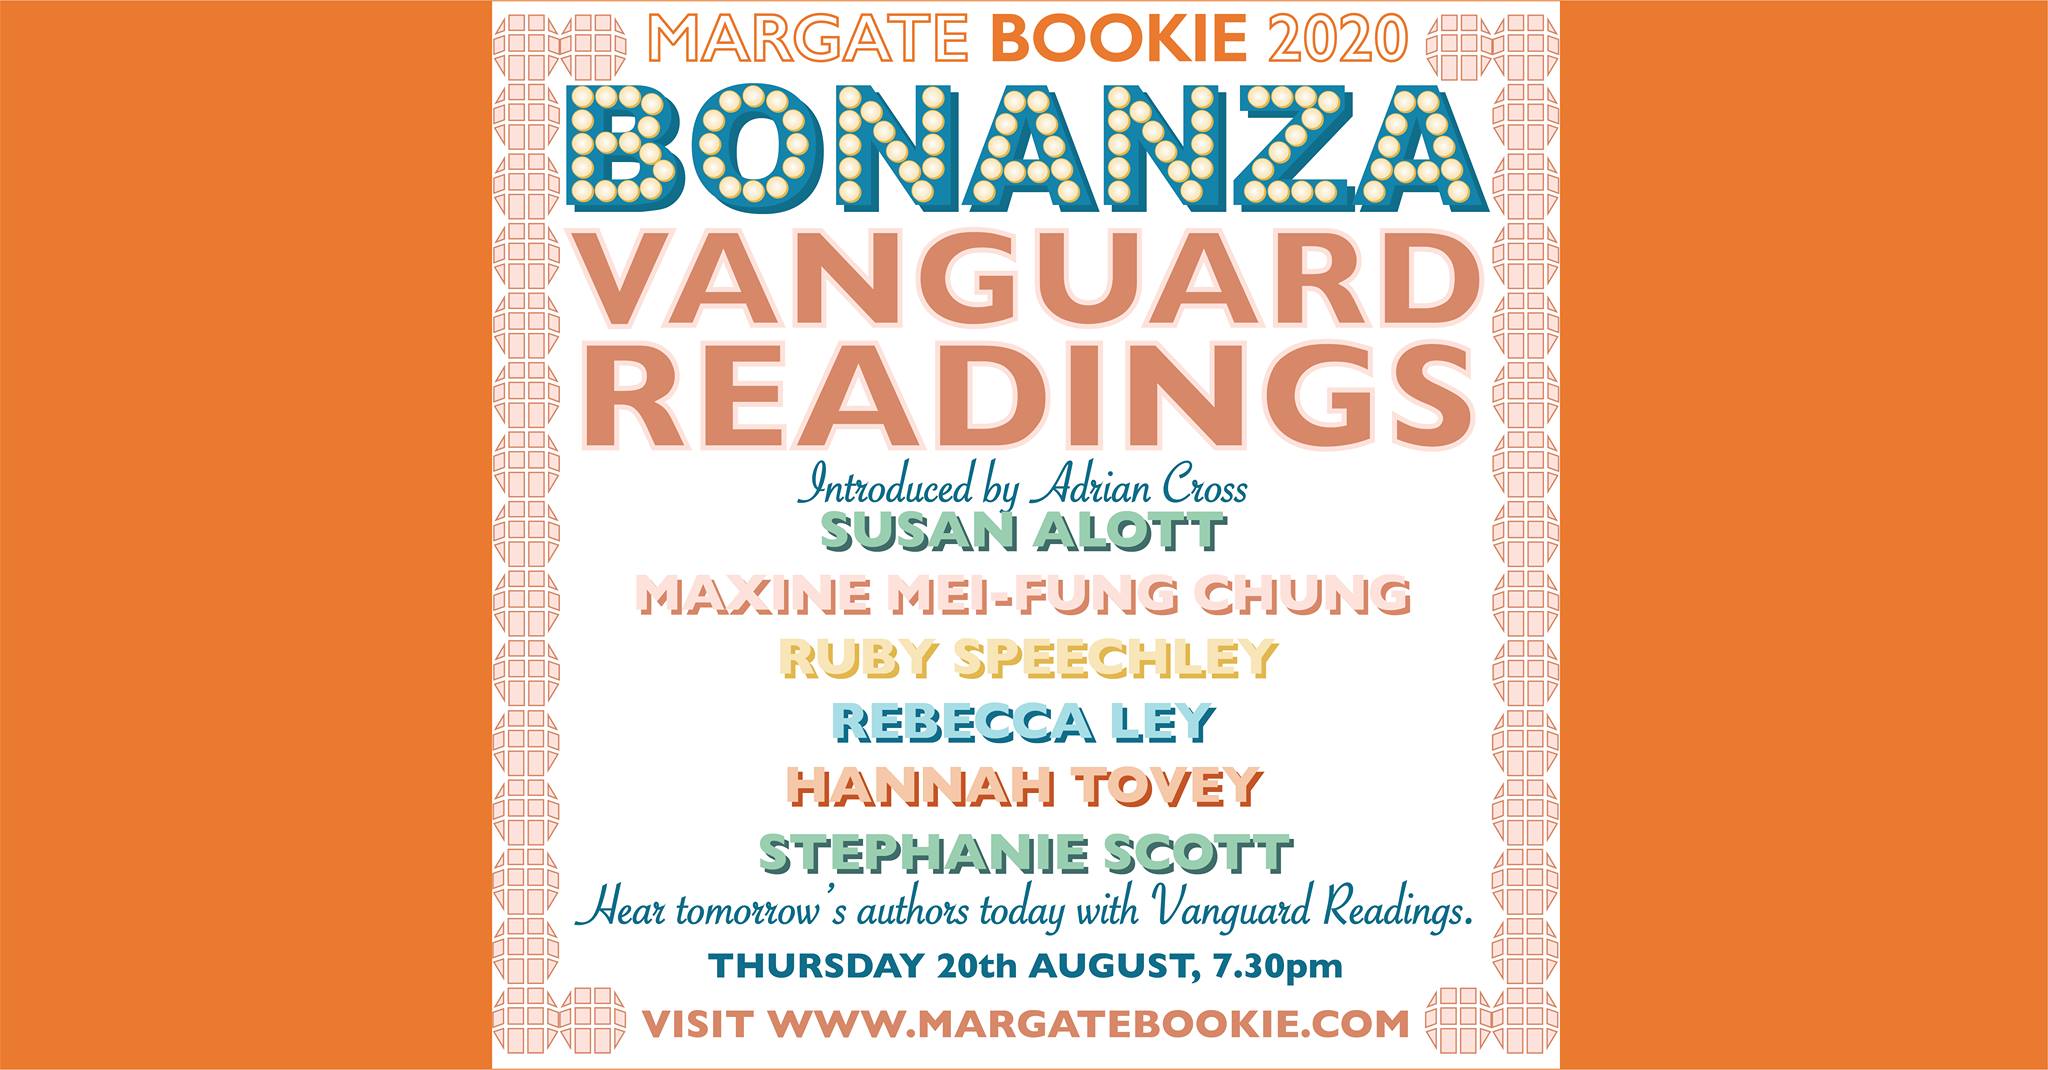 Margate Bookie 2020 Vanguard Readings